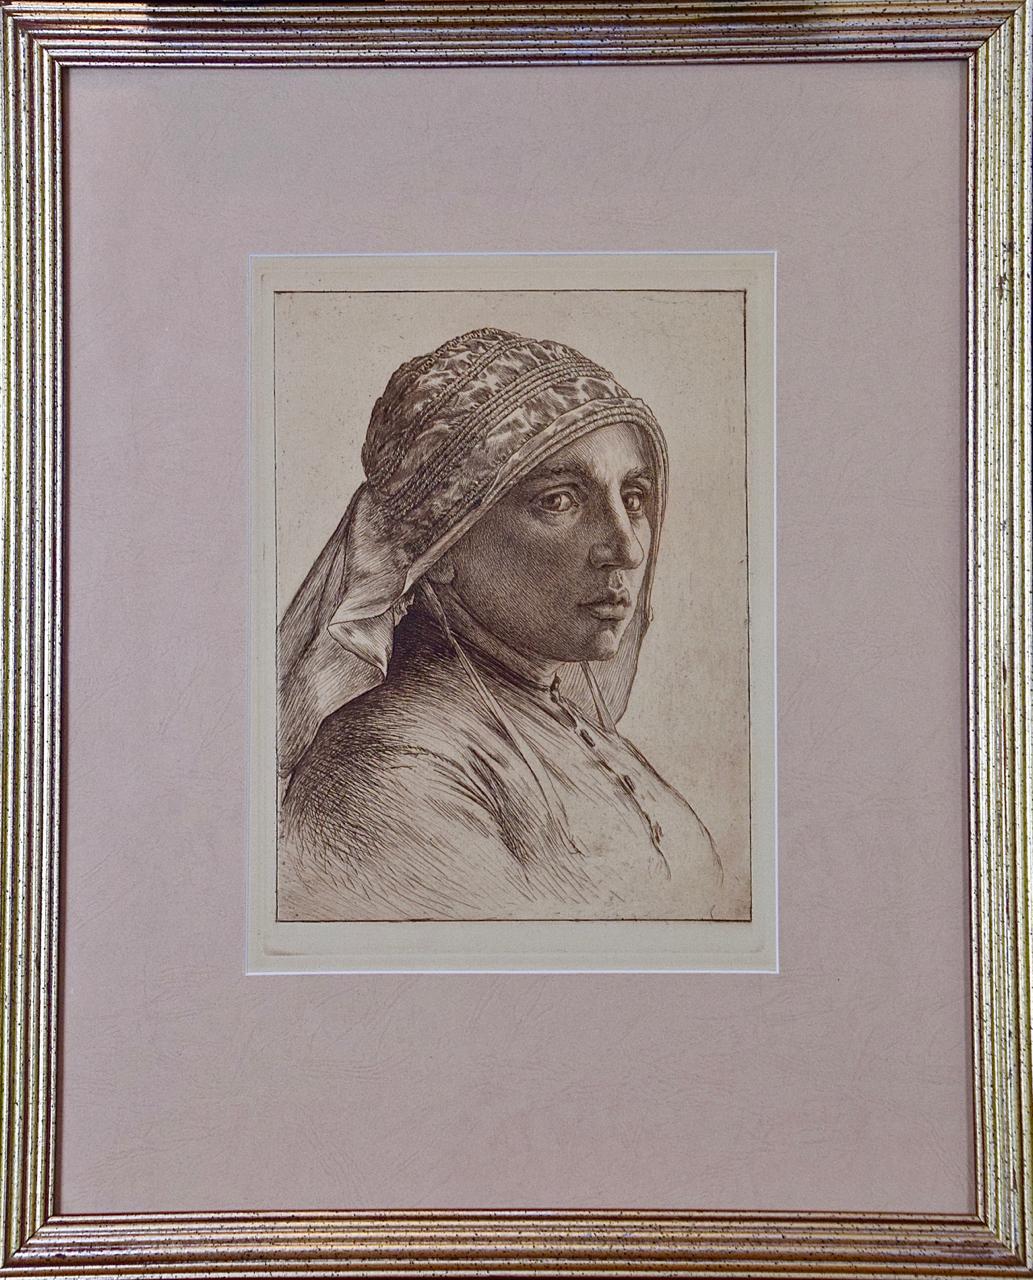 Ein Porträt einer Pensive-Frau in einem Kopftuch: Eine Radierung von George Rhead